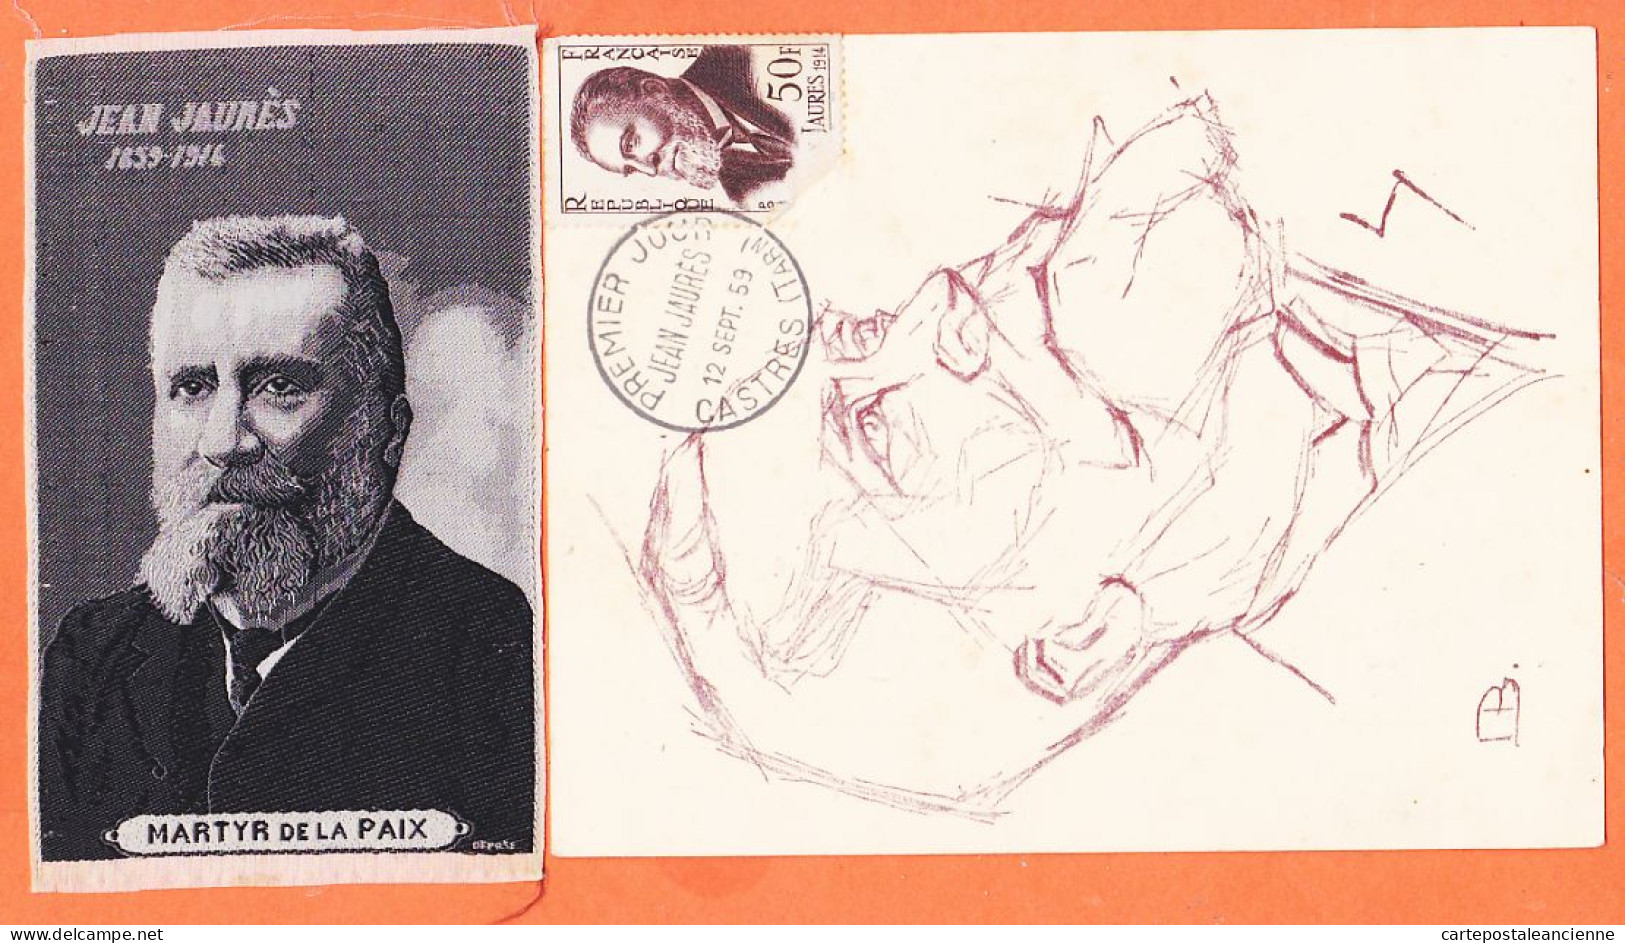 00360 ● JAURES Député SOCIALISTE Assassiné à PARIS 1859-1914 Apôtre PAIX + Portrait Tissé SOIE MARTYR 6,5x11-S.F.IO - Evènements